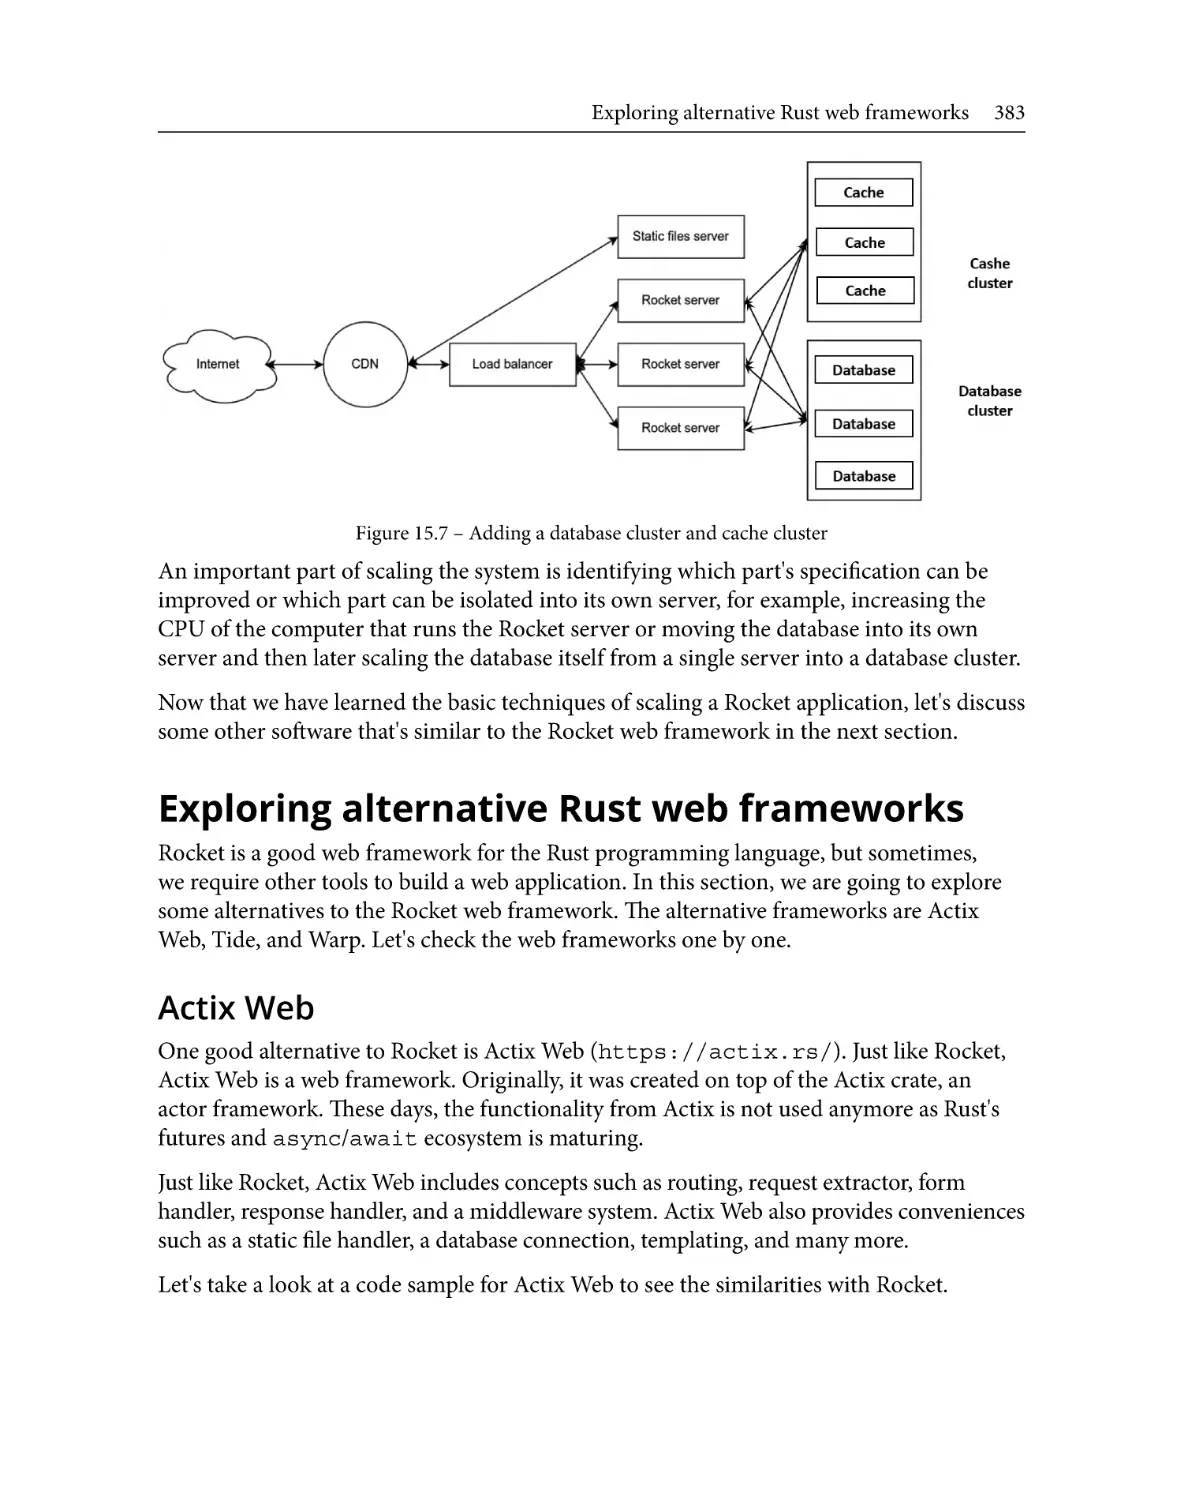 Exploring alternative Rust web frameworks
Actix Web